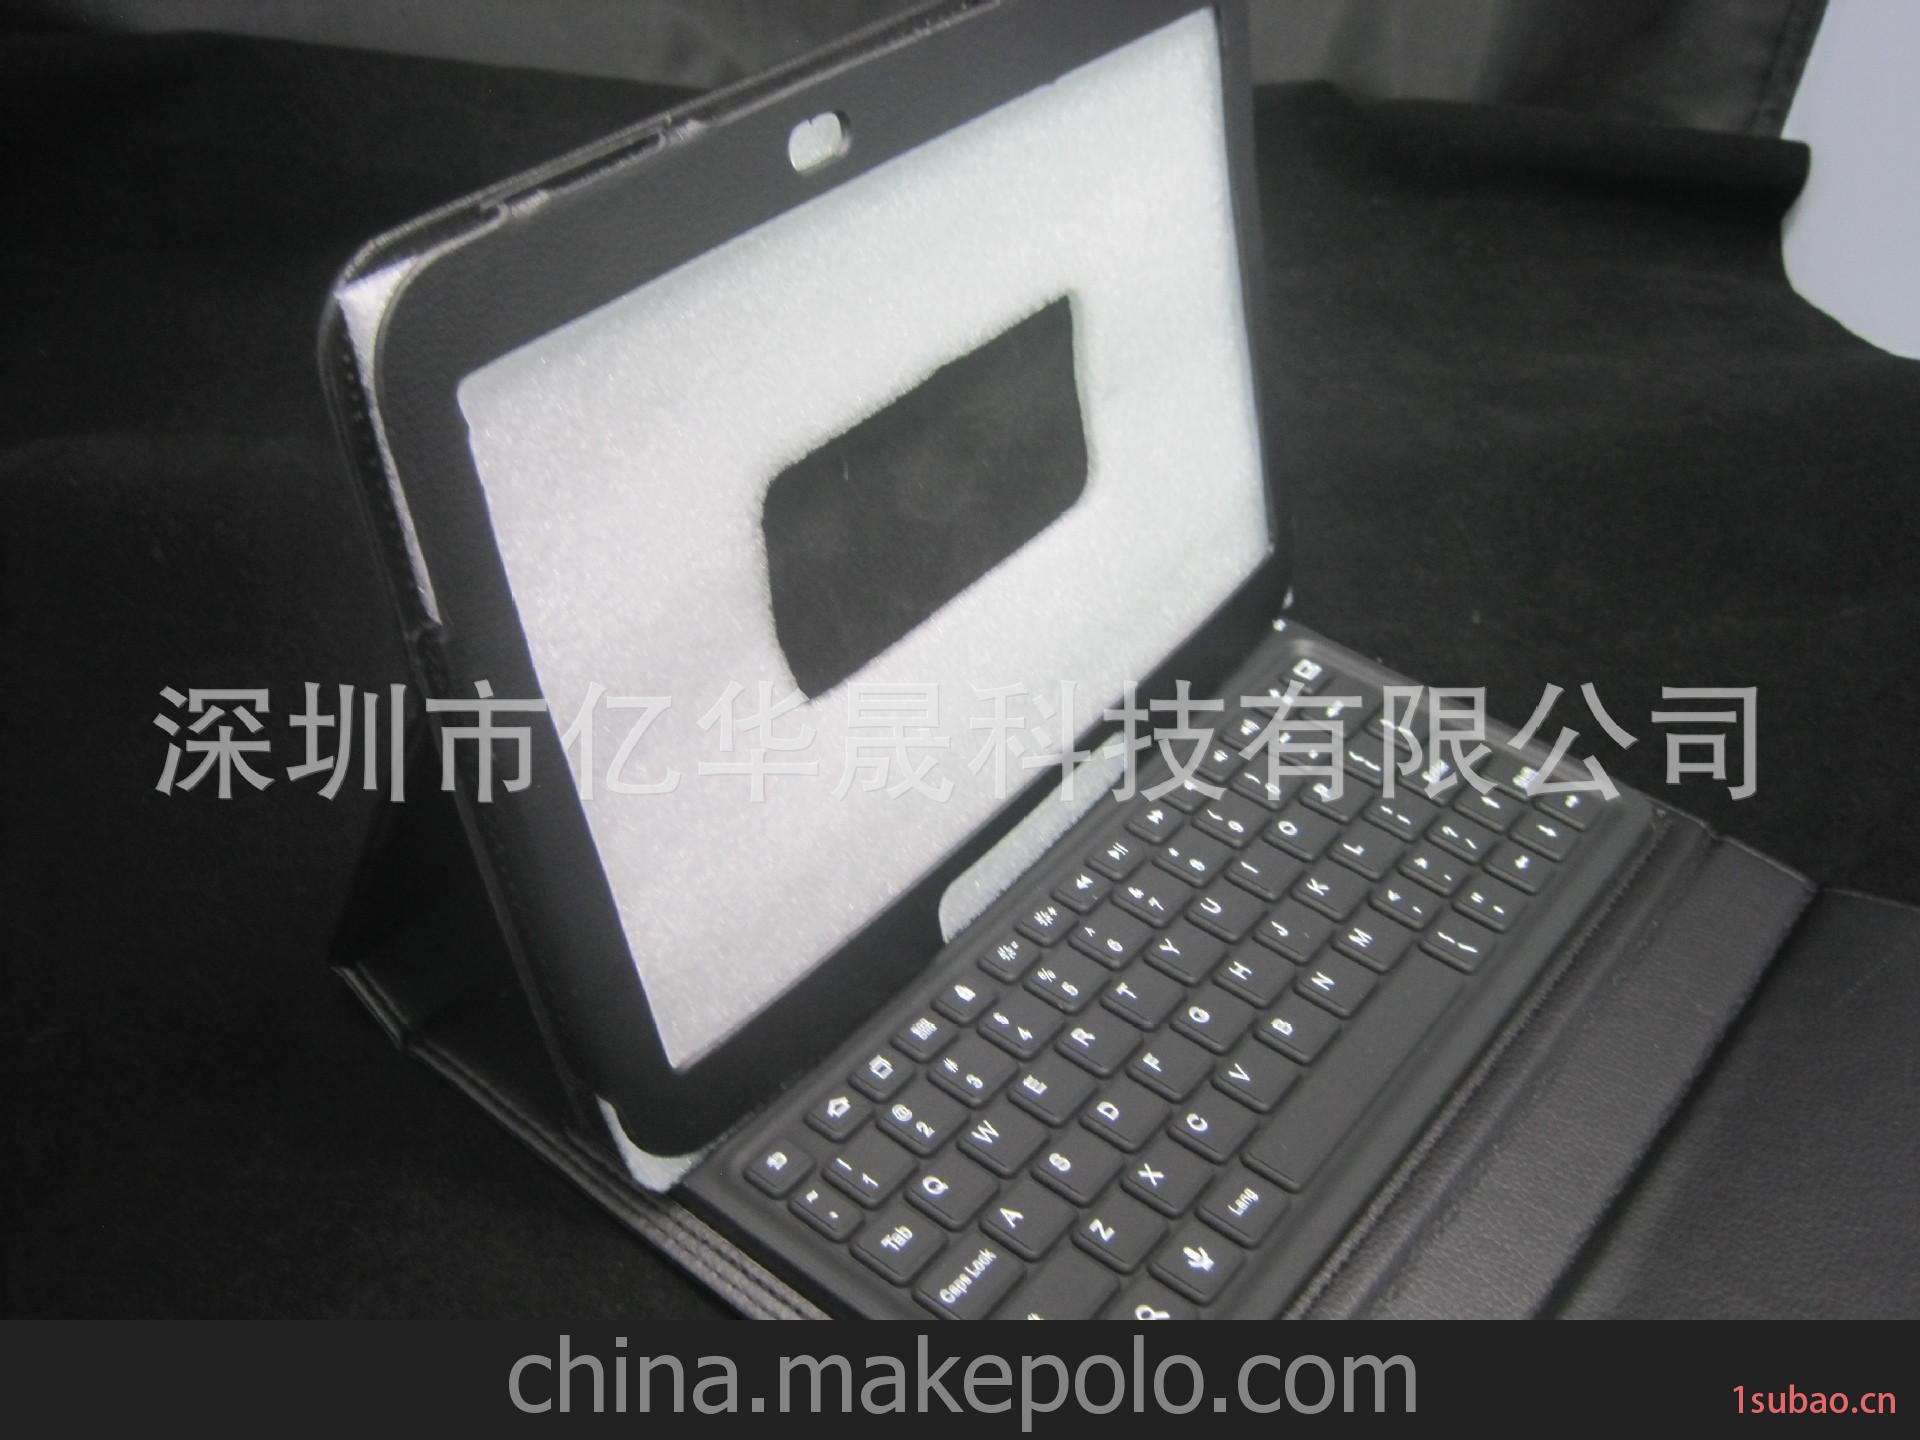 三星皮套键盘 TAB 3 10.1寸硅胶键盘 适用于三星平板5200/5210